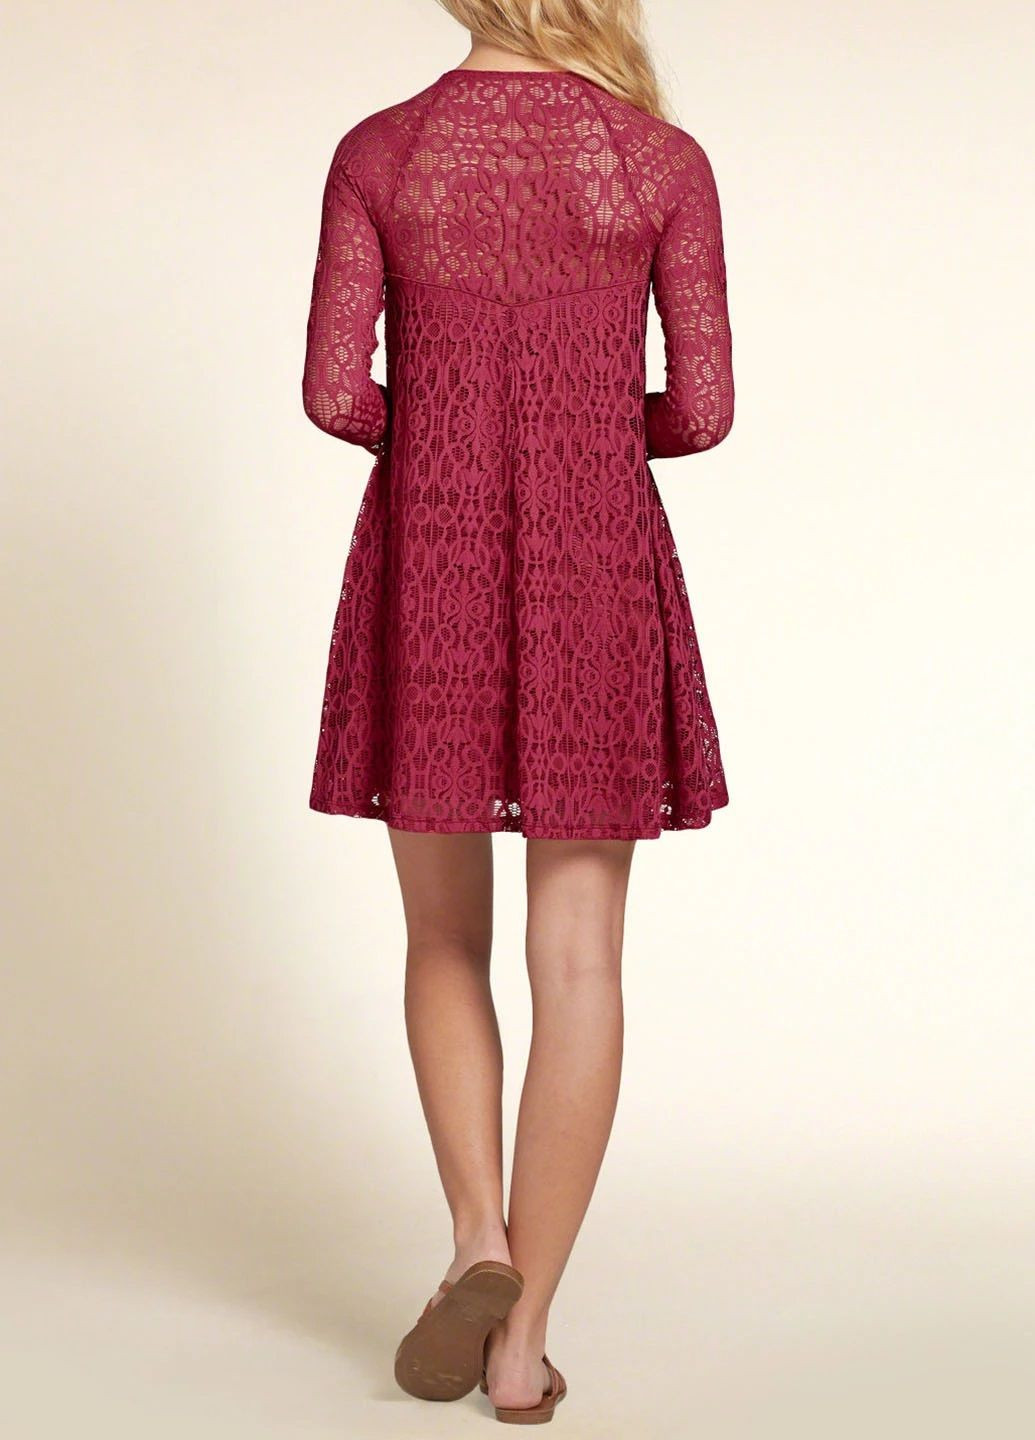 Бордовое платье женское - платье hc1907w Hollister